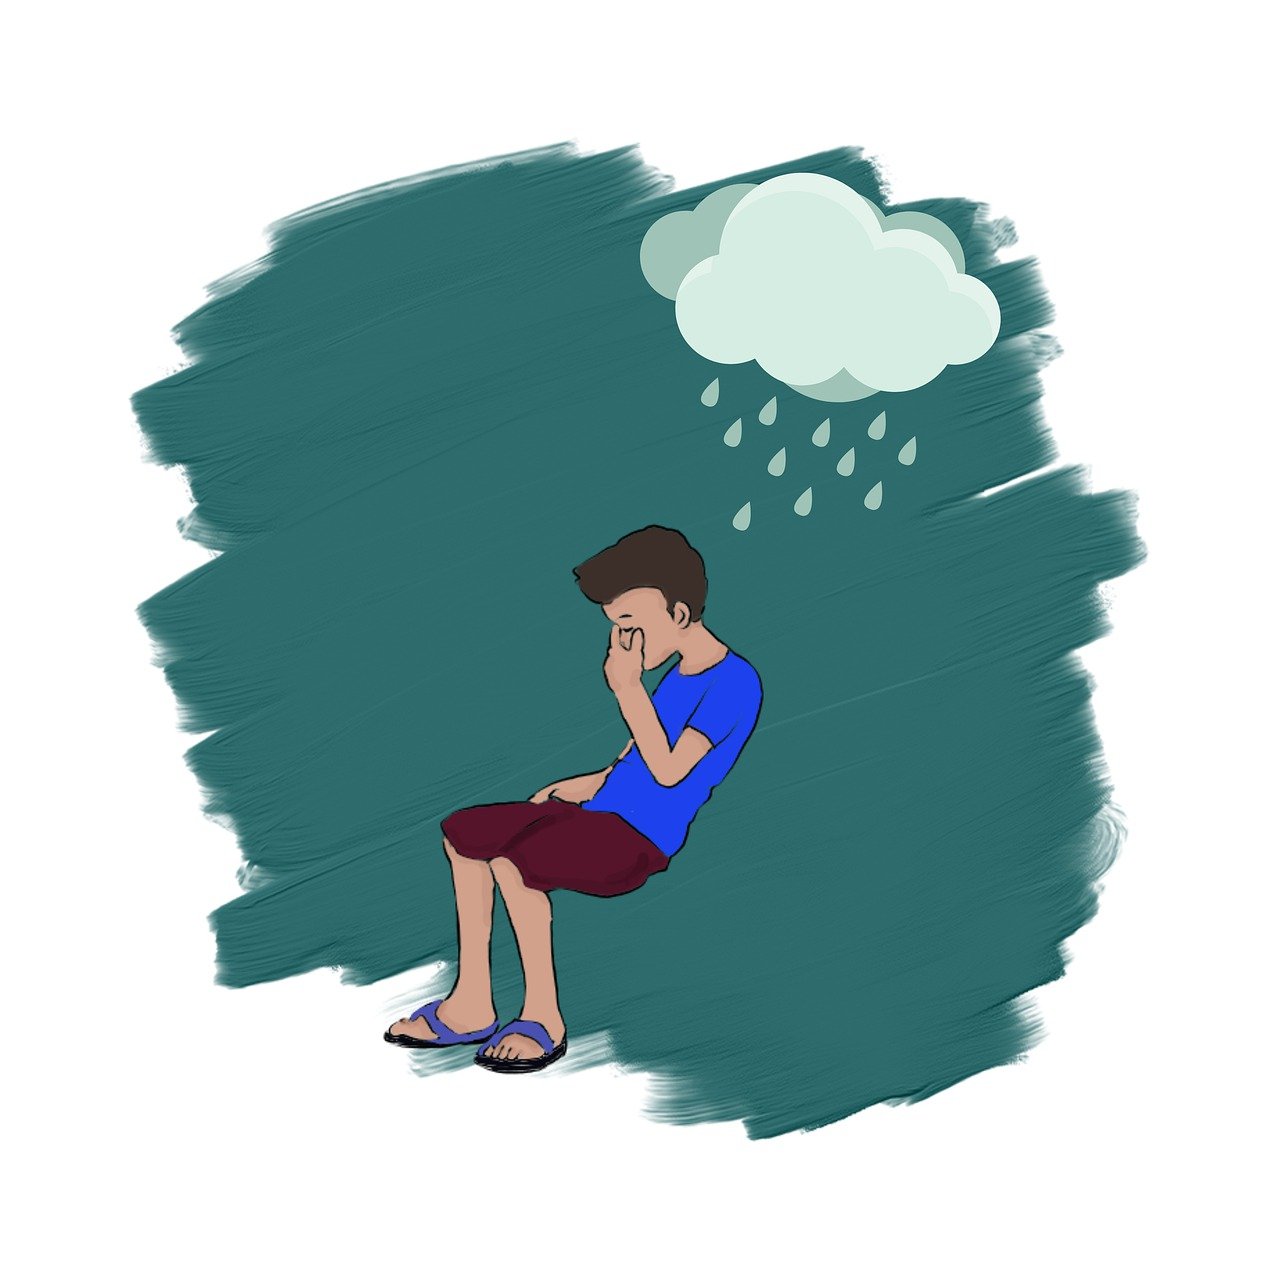 البكاء والانعزال من علامات الاضطراب النفسي عند الطفل 